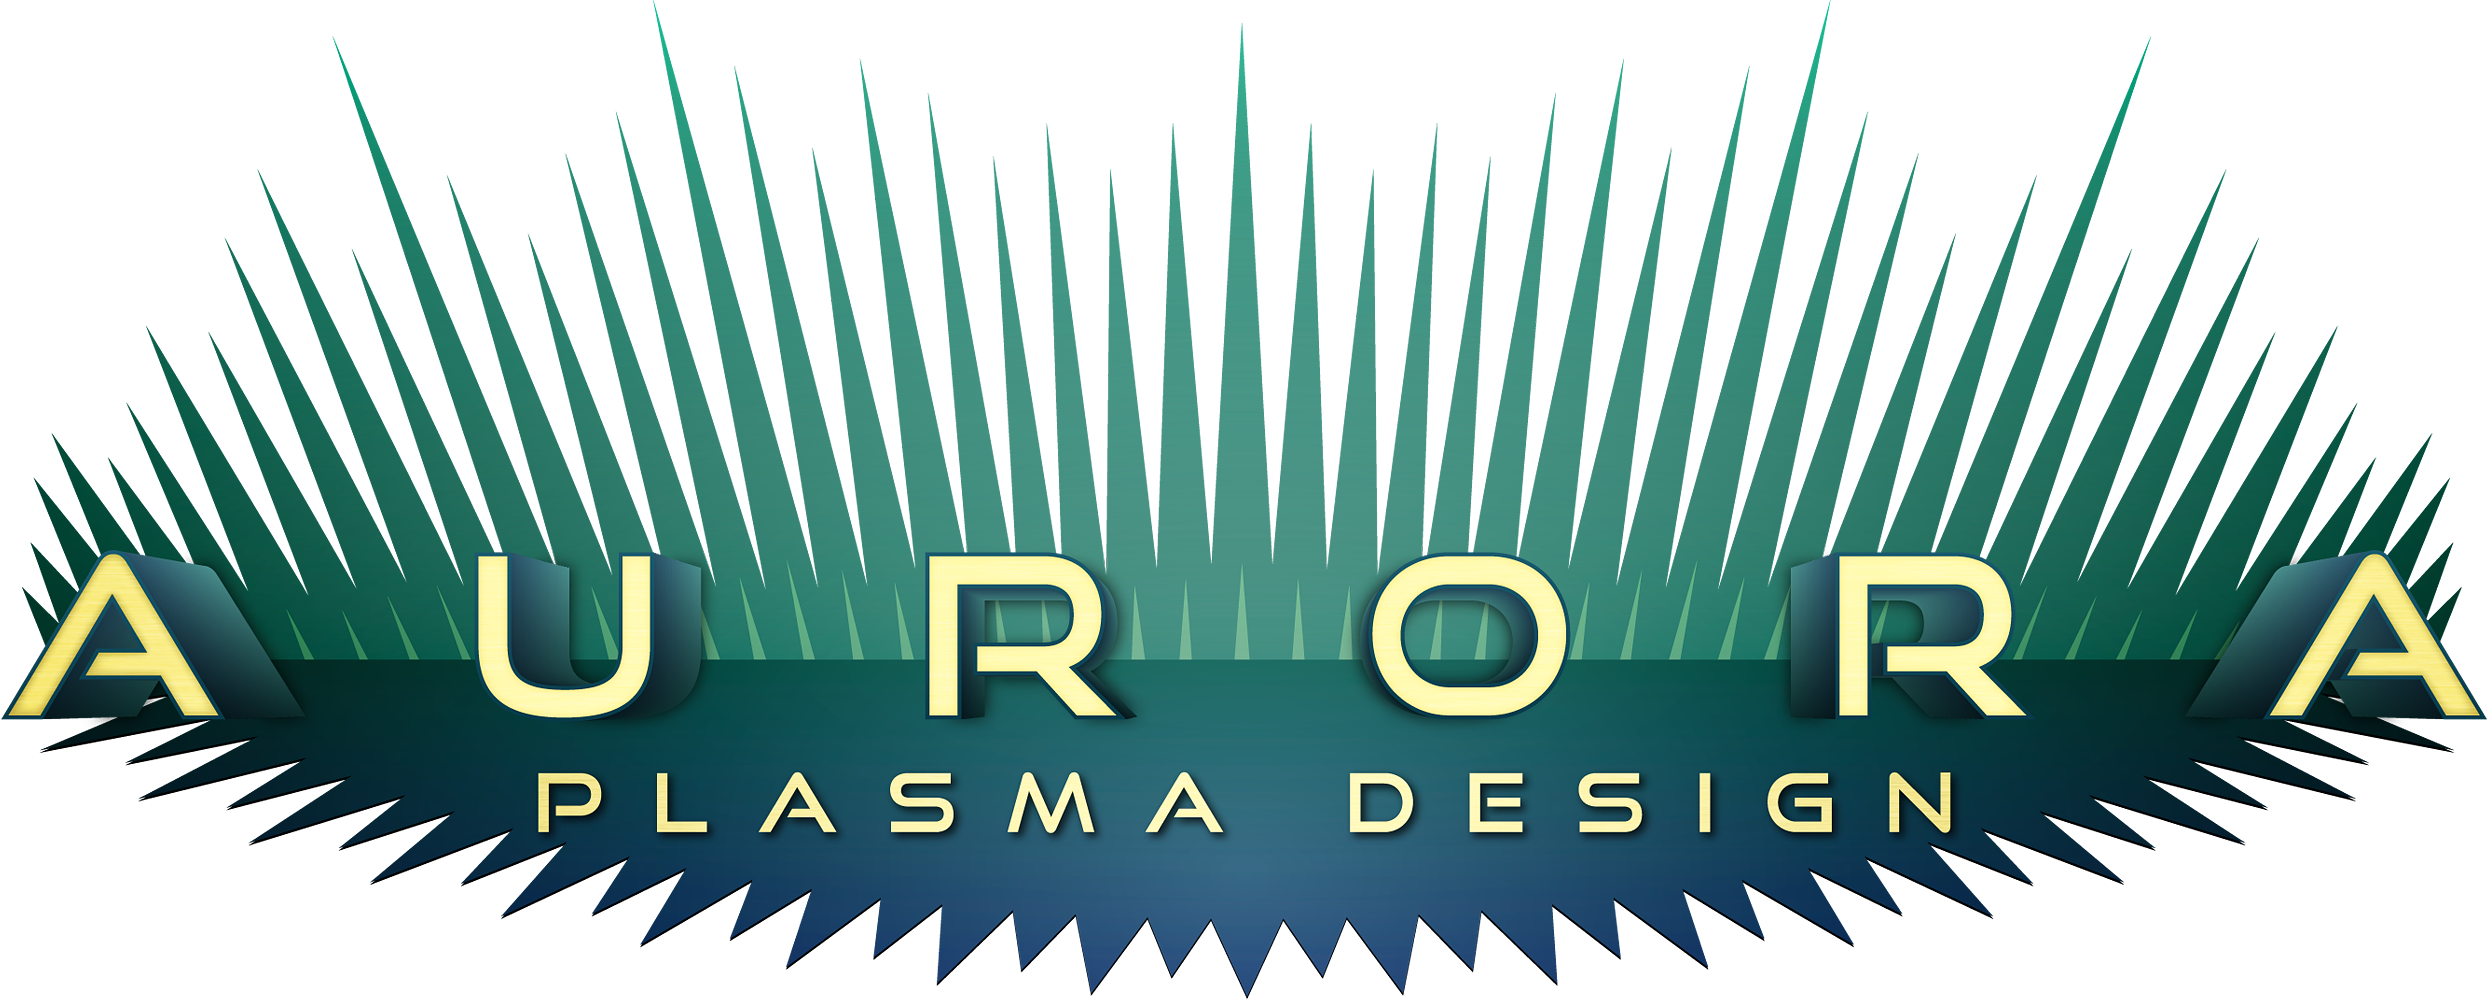 http://auroraplasmadesign.com/cdn/shop/files/Aurora-Logo-1080p.png?v=1614313388